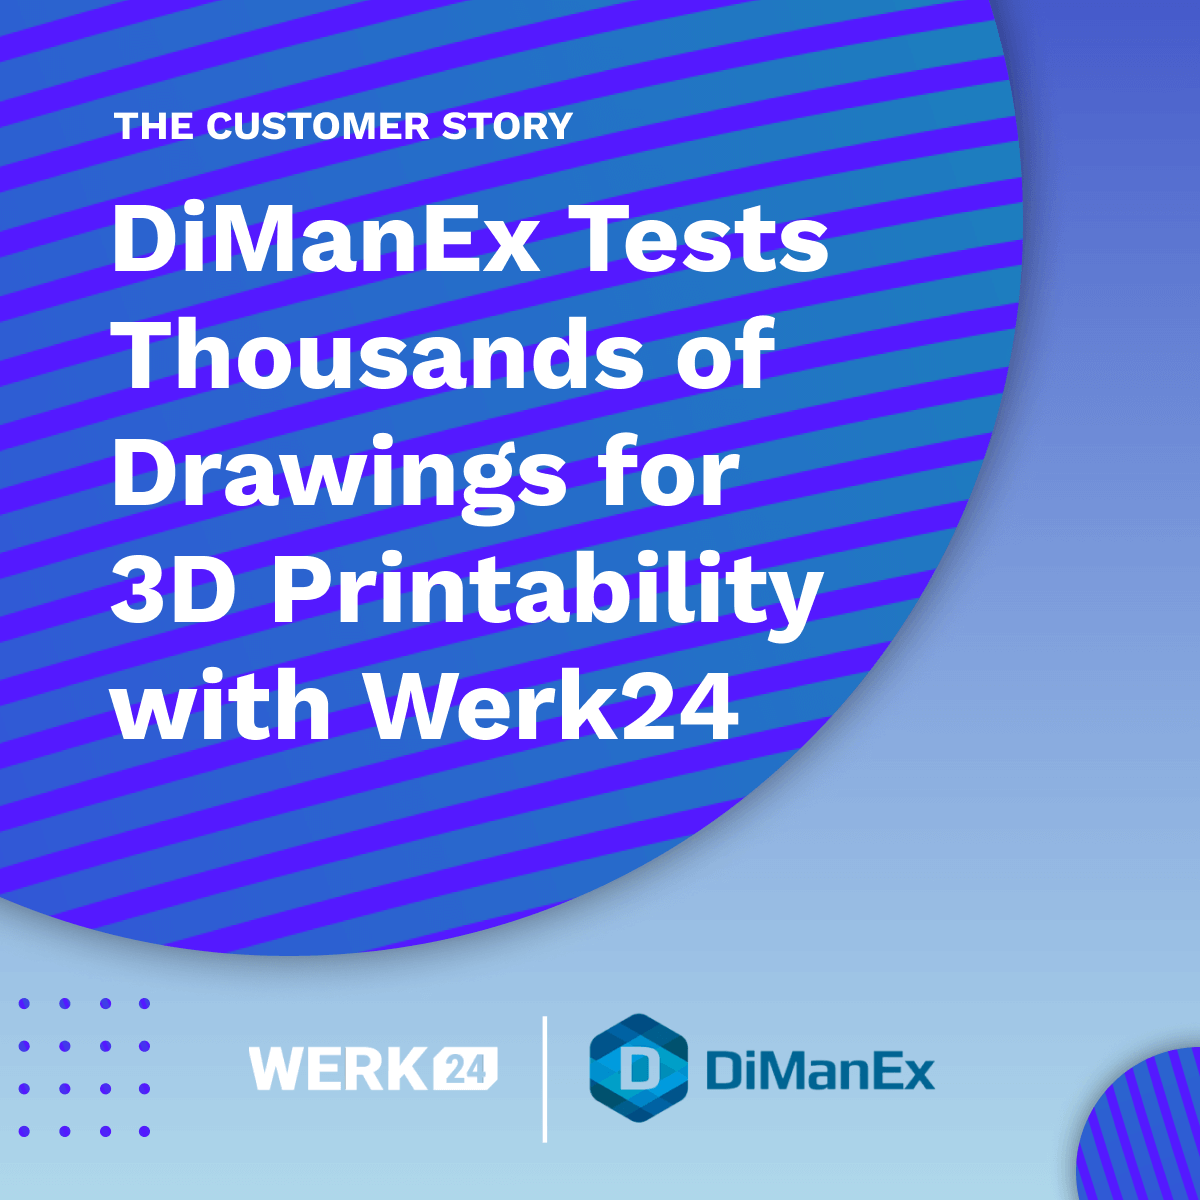 DiManEx testa migliaia di disegni per la stampabilità in 3D con Werk24